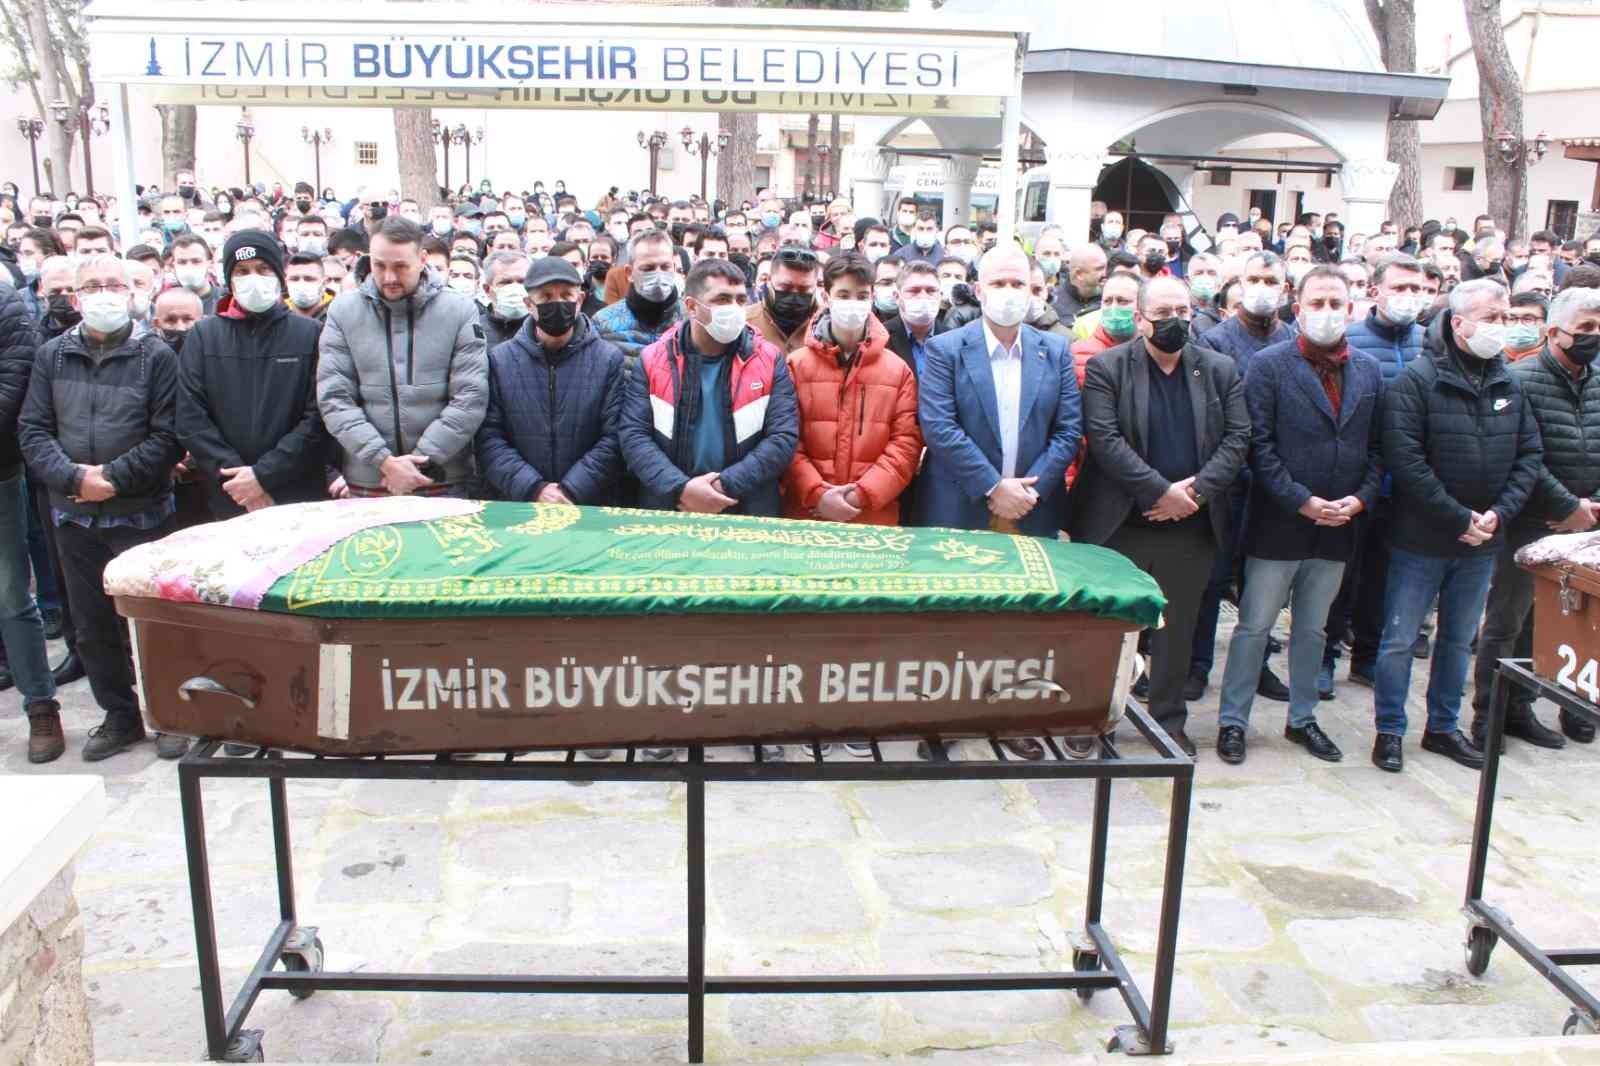 Tur kazasında ölen Yasemin Özkan son yolculuğuna uğurlandı #izmir